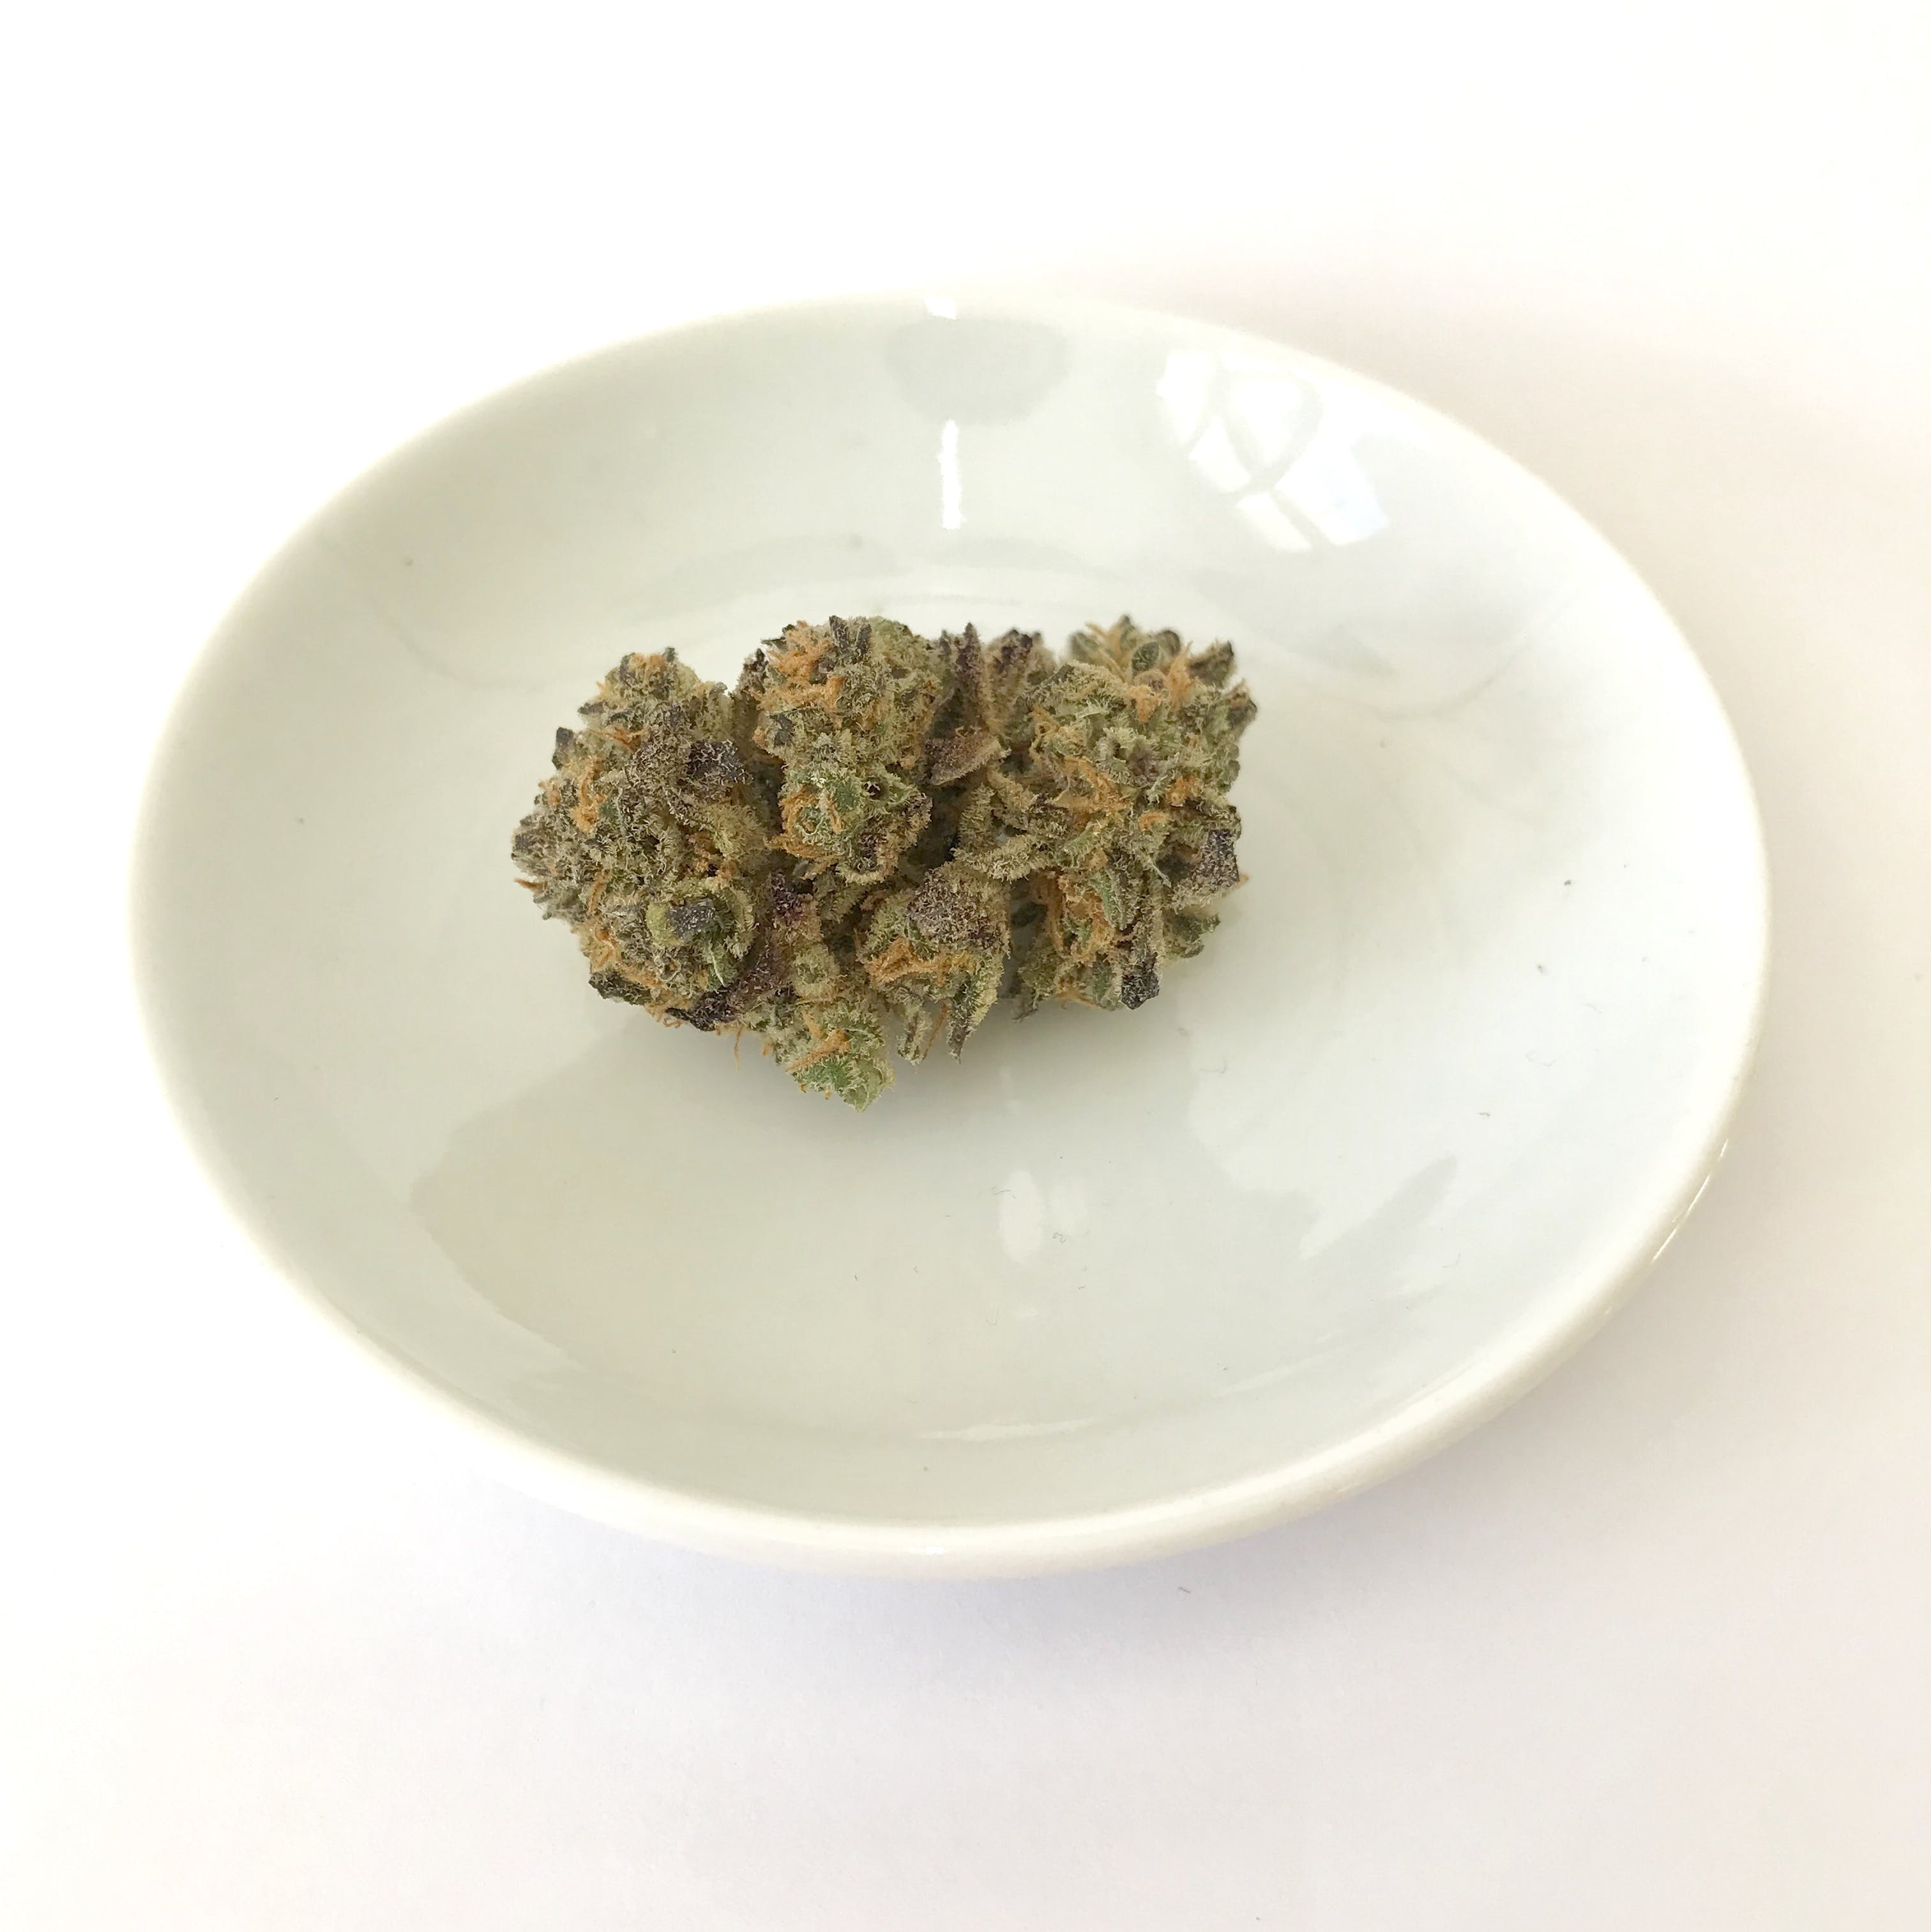 marijuana-dispensaries-highway-collective-in-el-cajon-ak-47